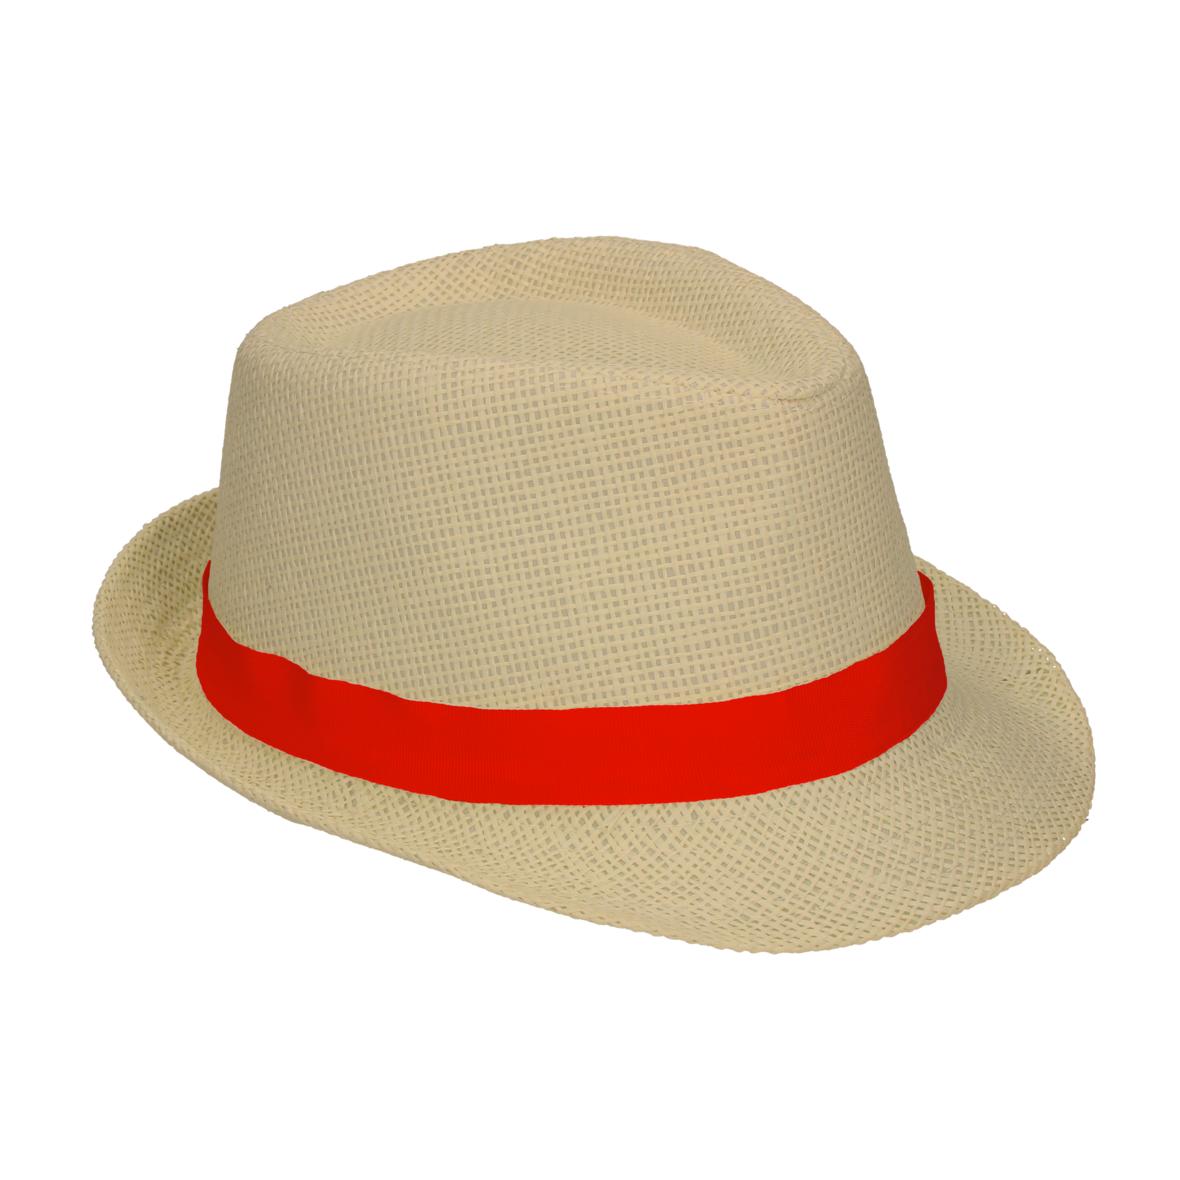 Cappello dal taglio classico in stile South Sea - Marone